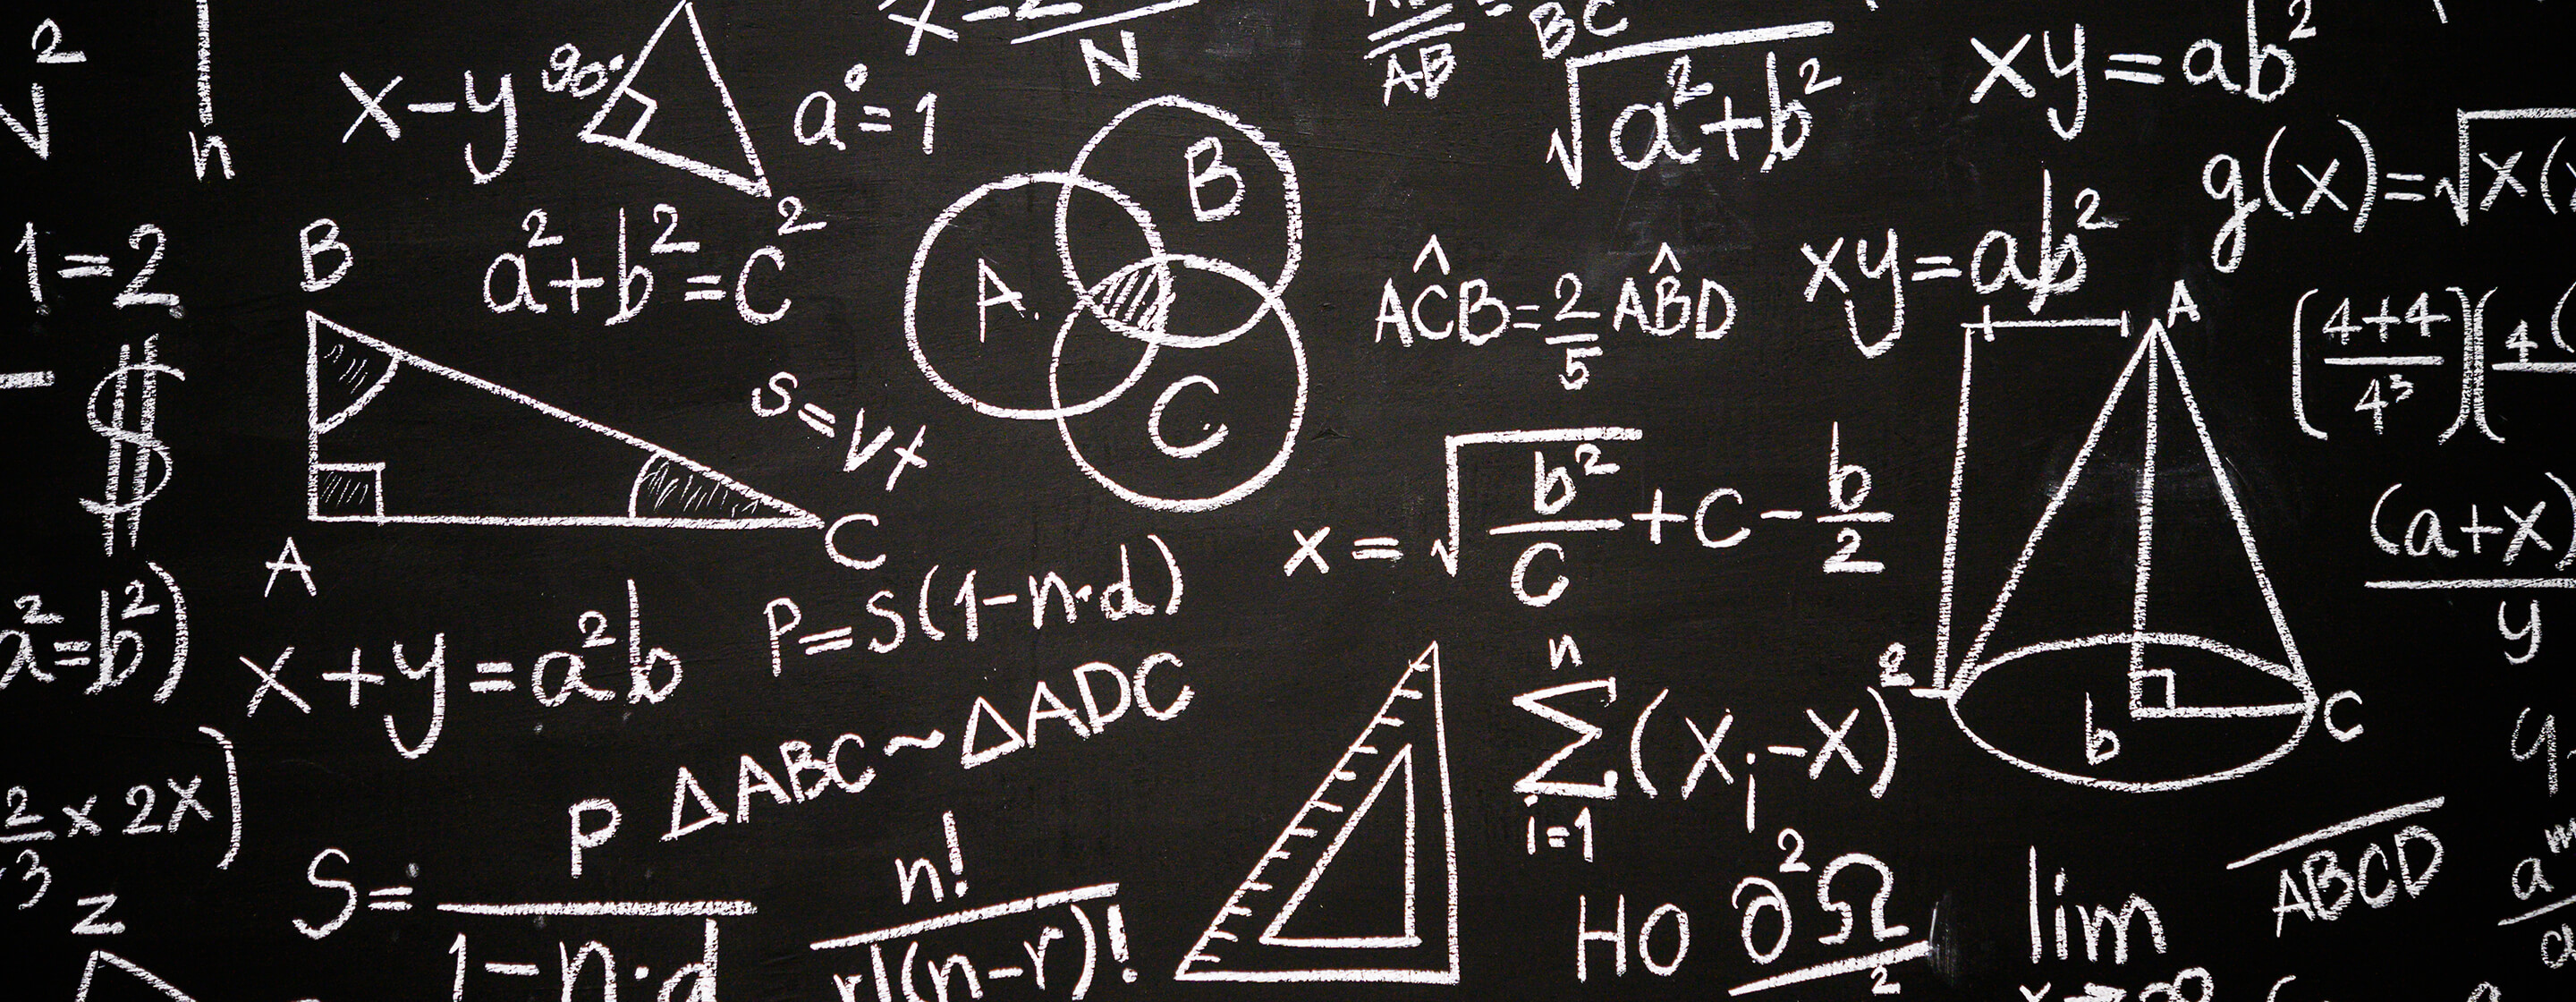 A level Maths written in chalk on a blackboard